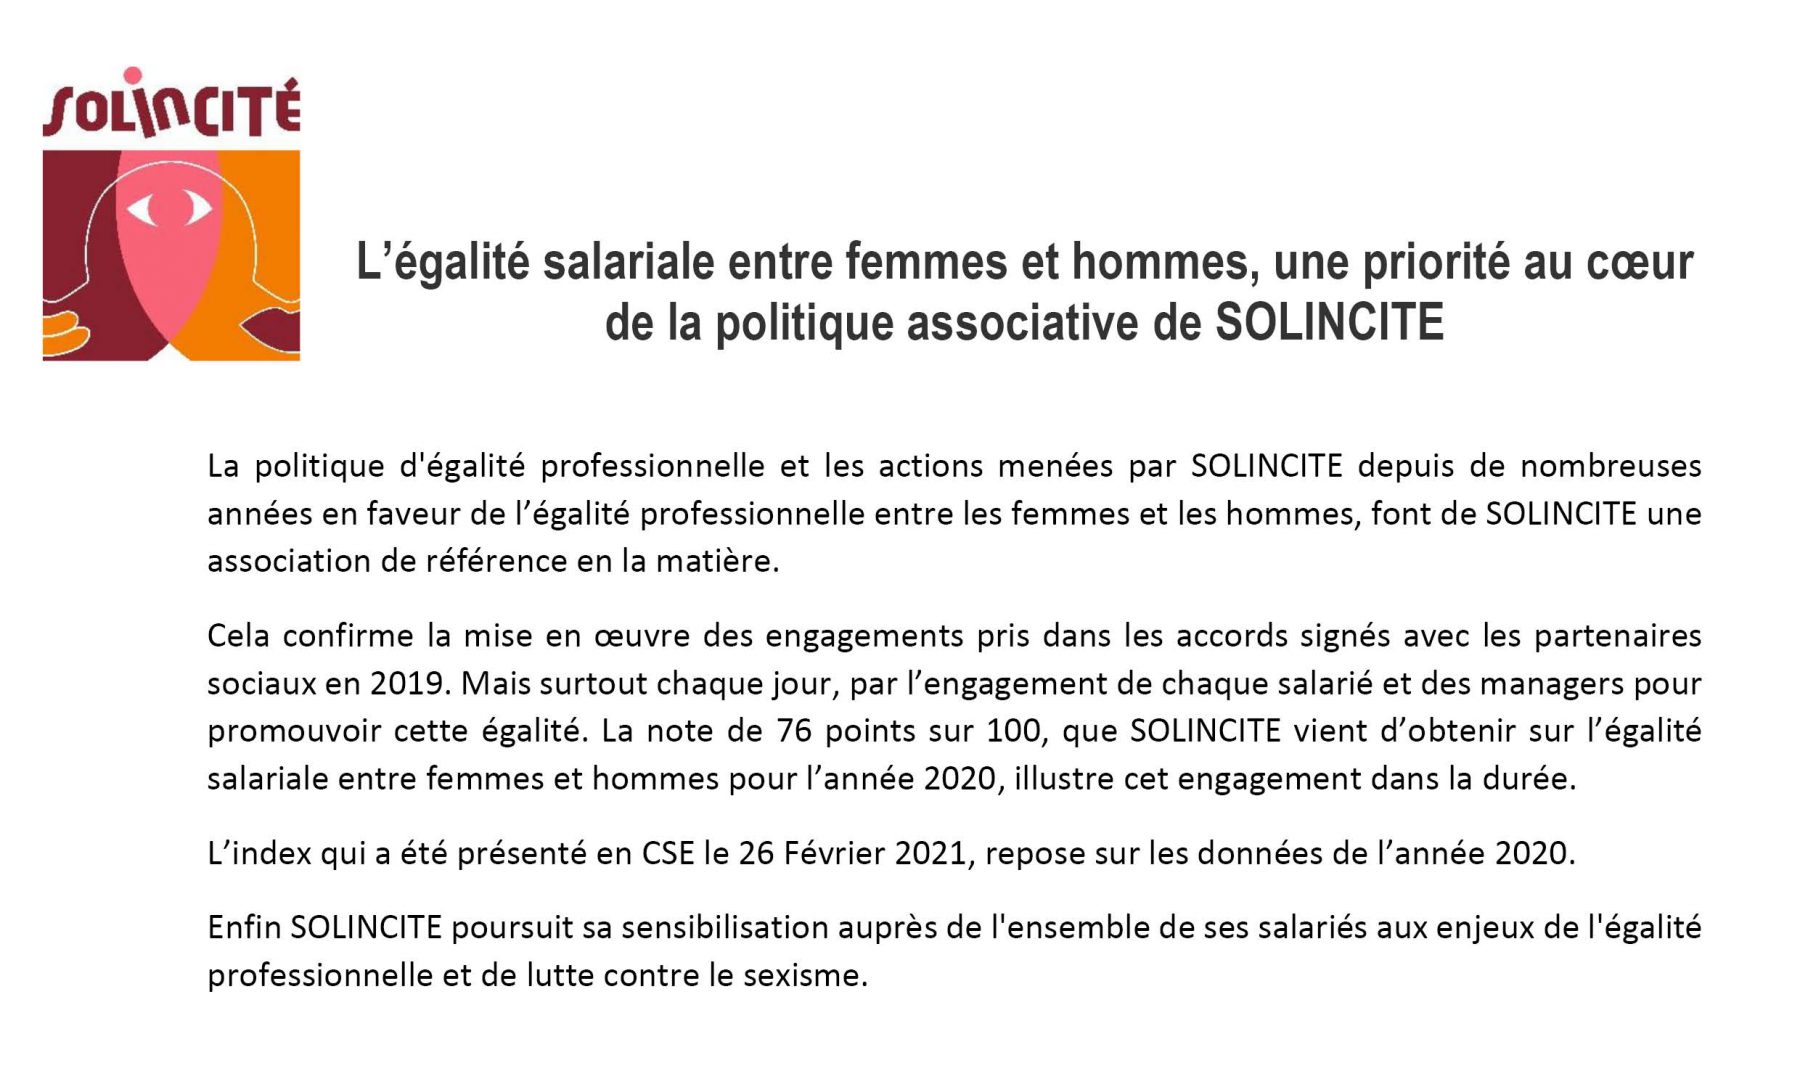 L’égalité salariale entre femmes et hommes, une priorité au cœur de la politique associative de SOLINCITE